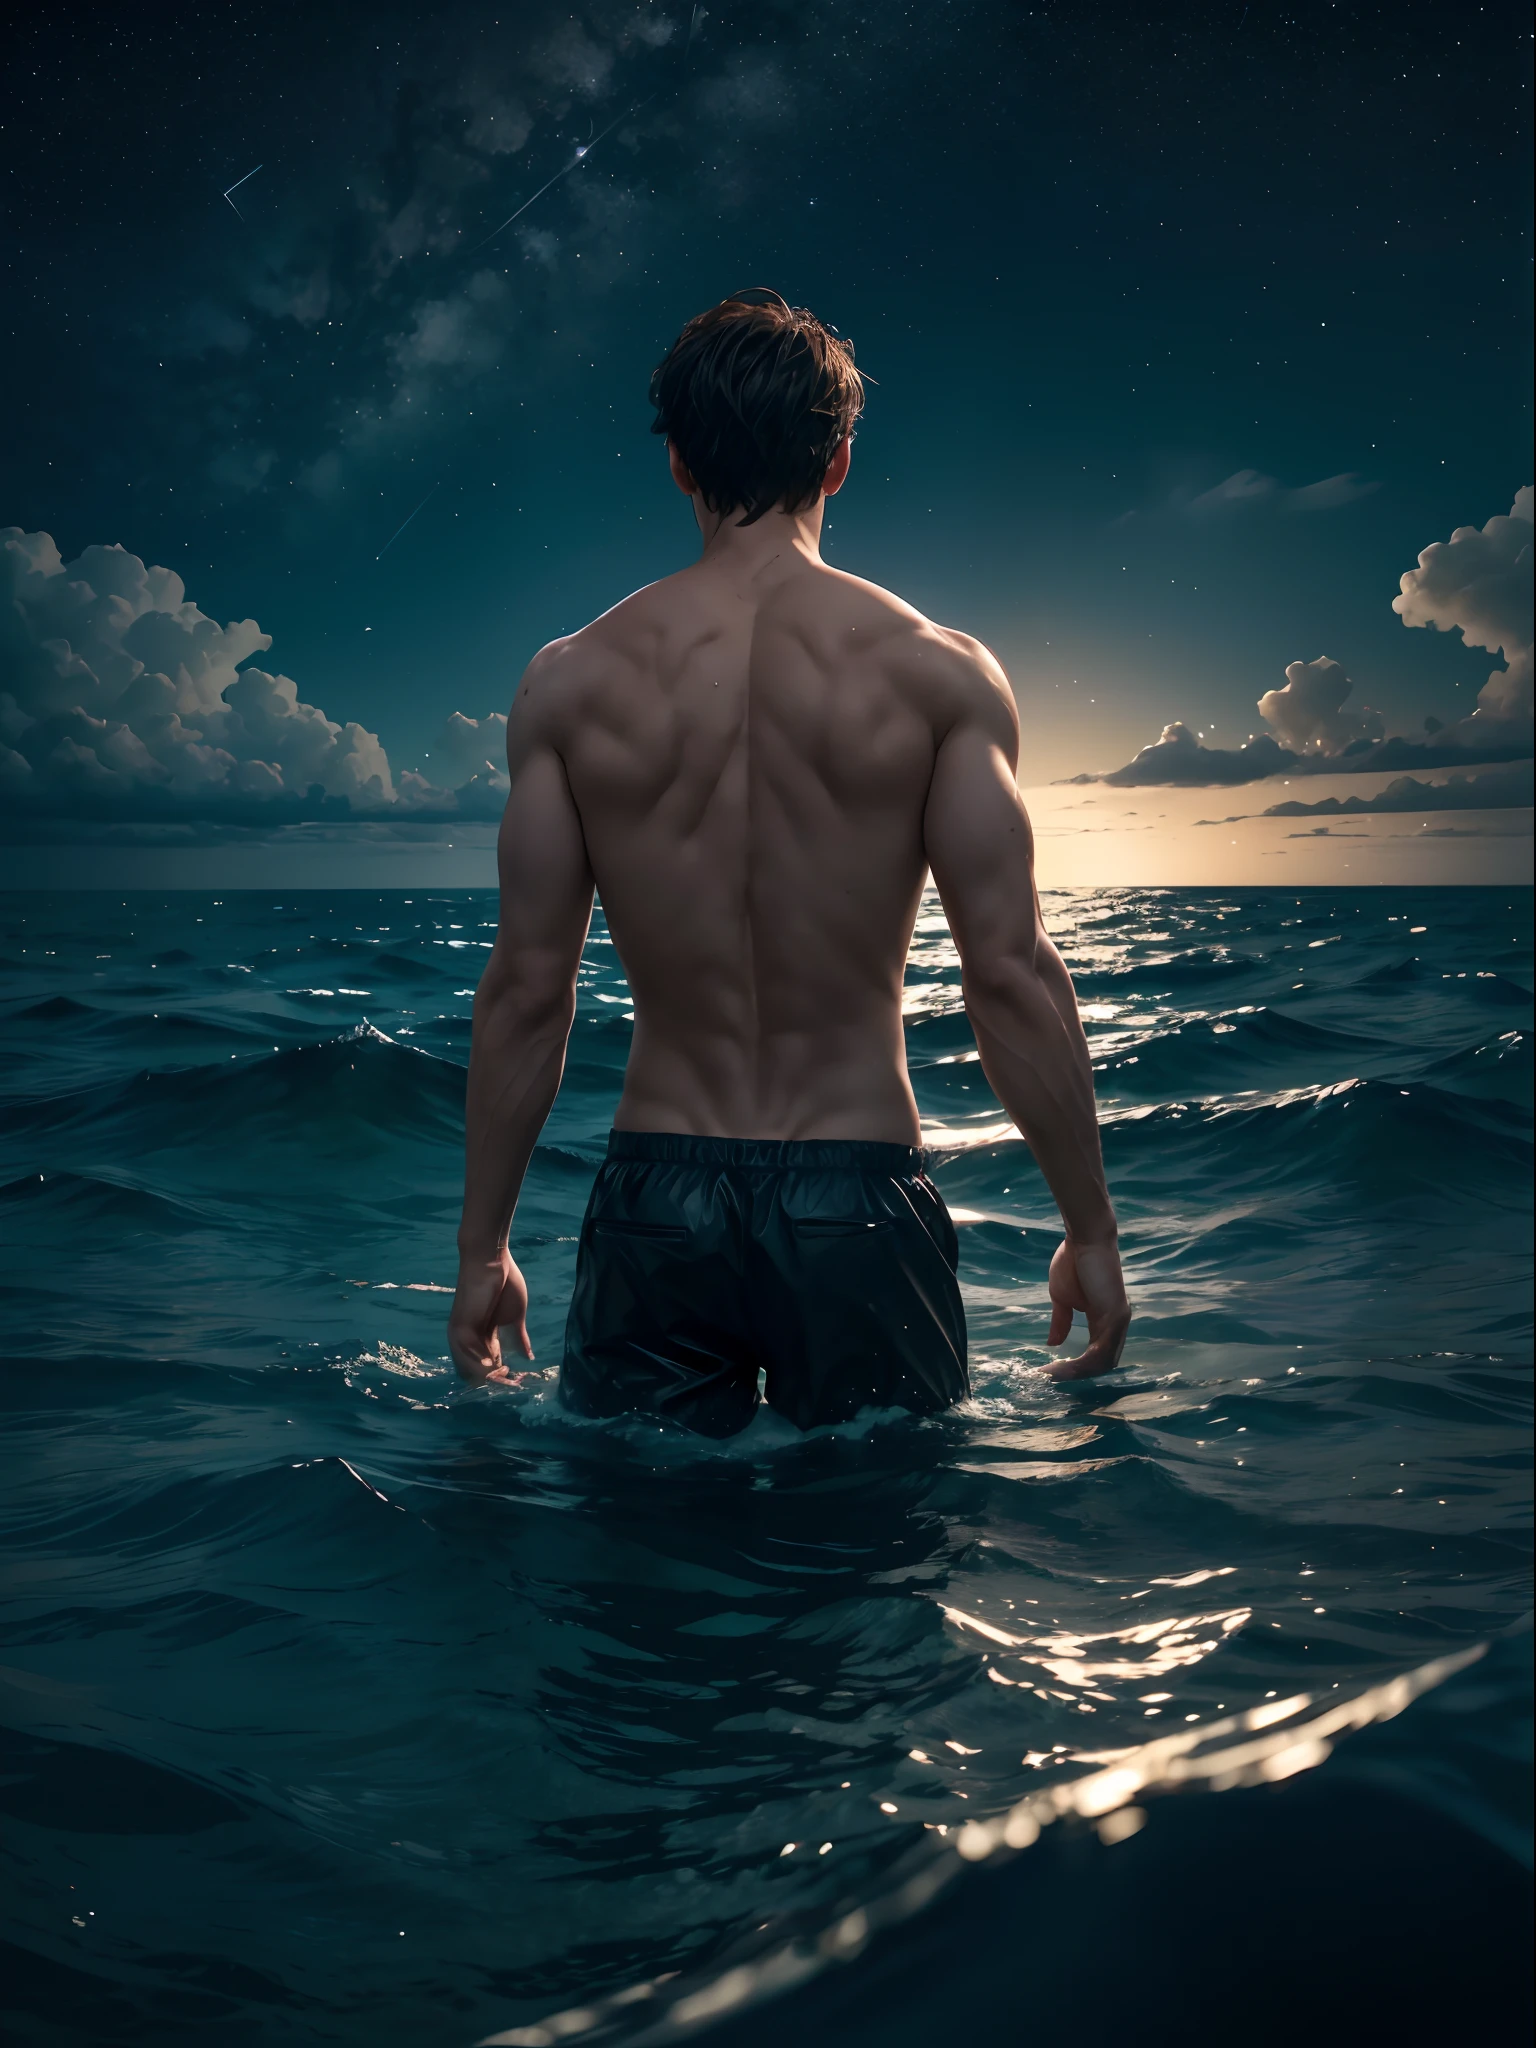 ผู้ชาย, ในทะเล, โดยครึ่งหนึ่งร่างของเขาจมอยู่ในน้ำ, ด้านหลังท้องฟ้าเต็มไปด้วยดวงดาวโดยมีดวงจันทร์อยู่ตรงกลาง